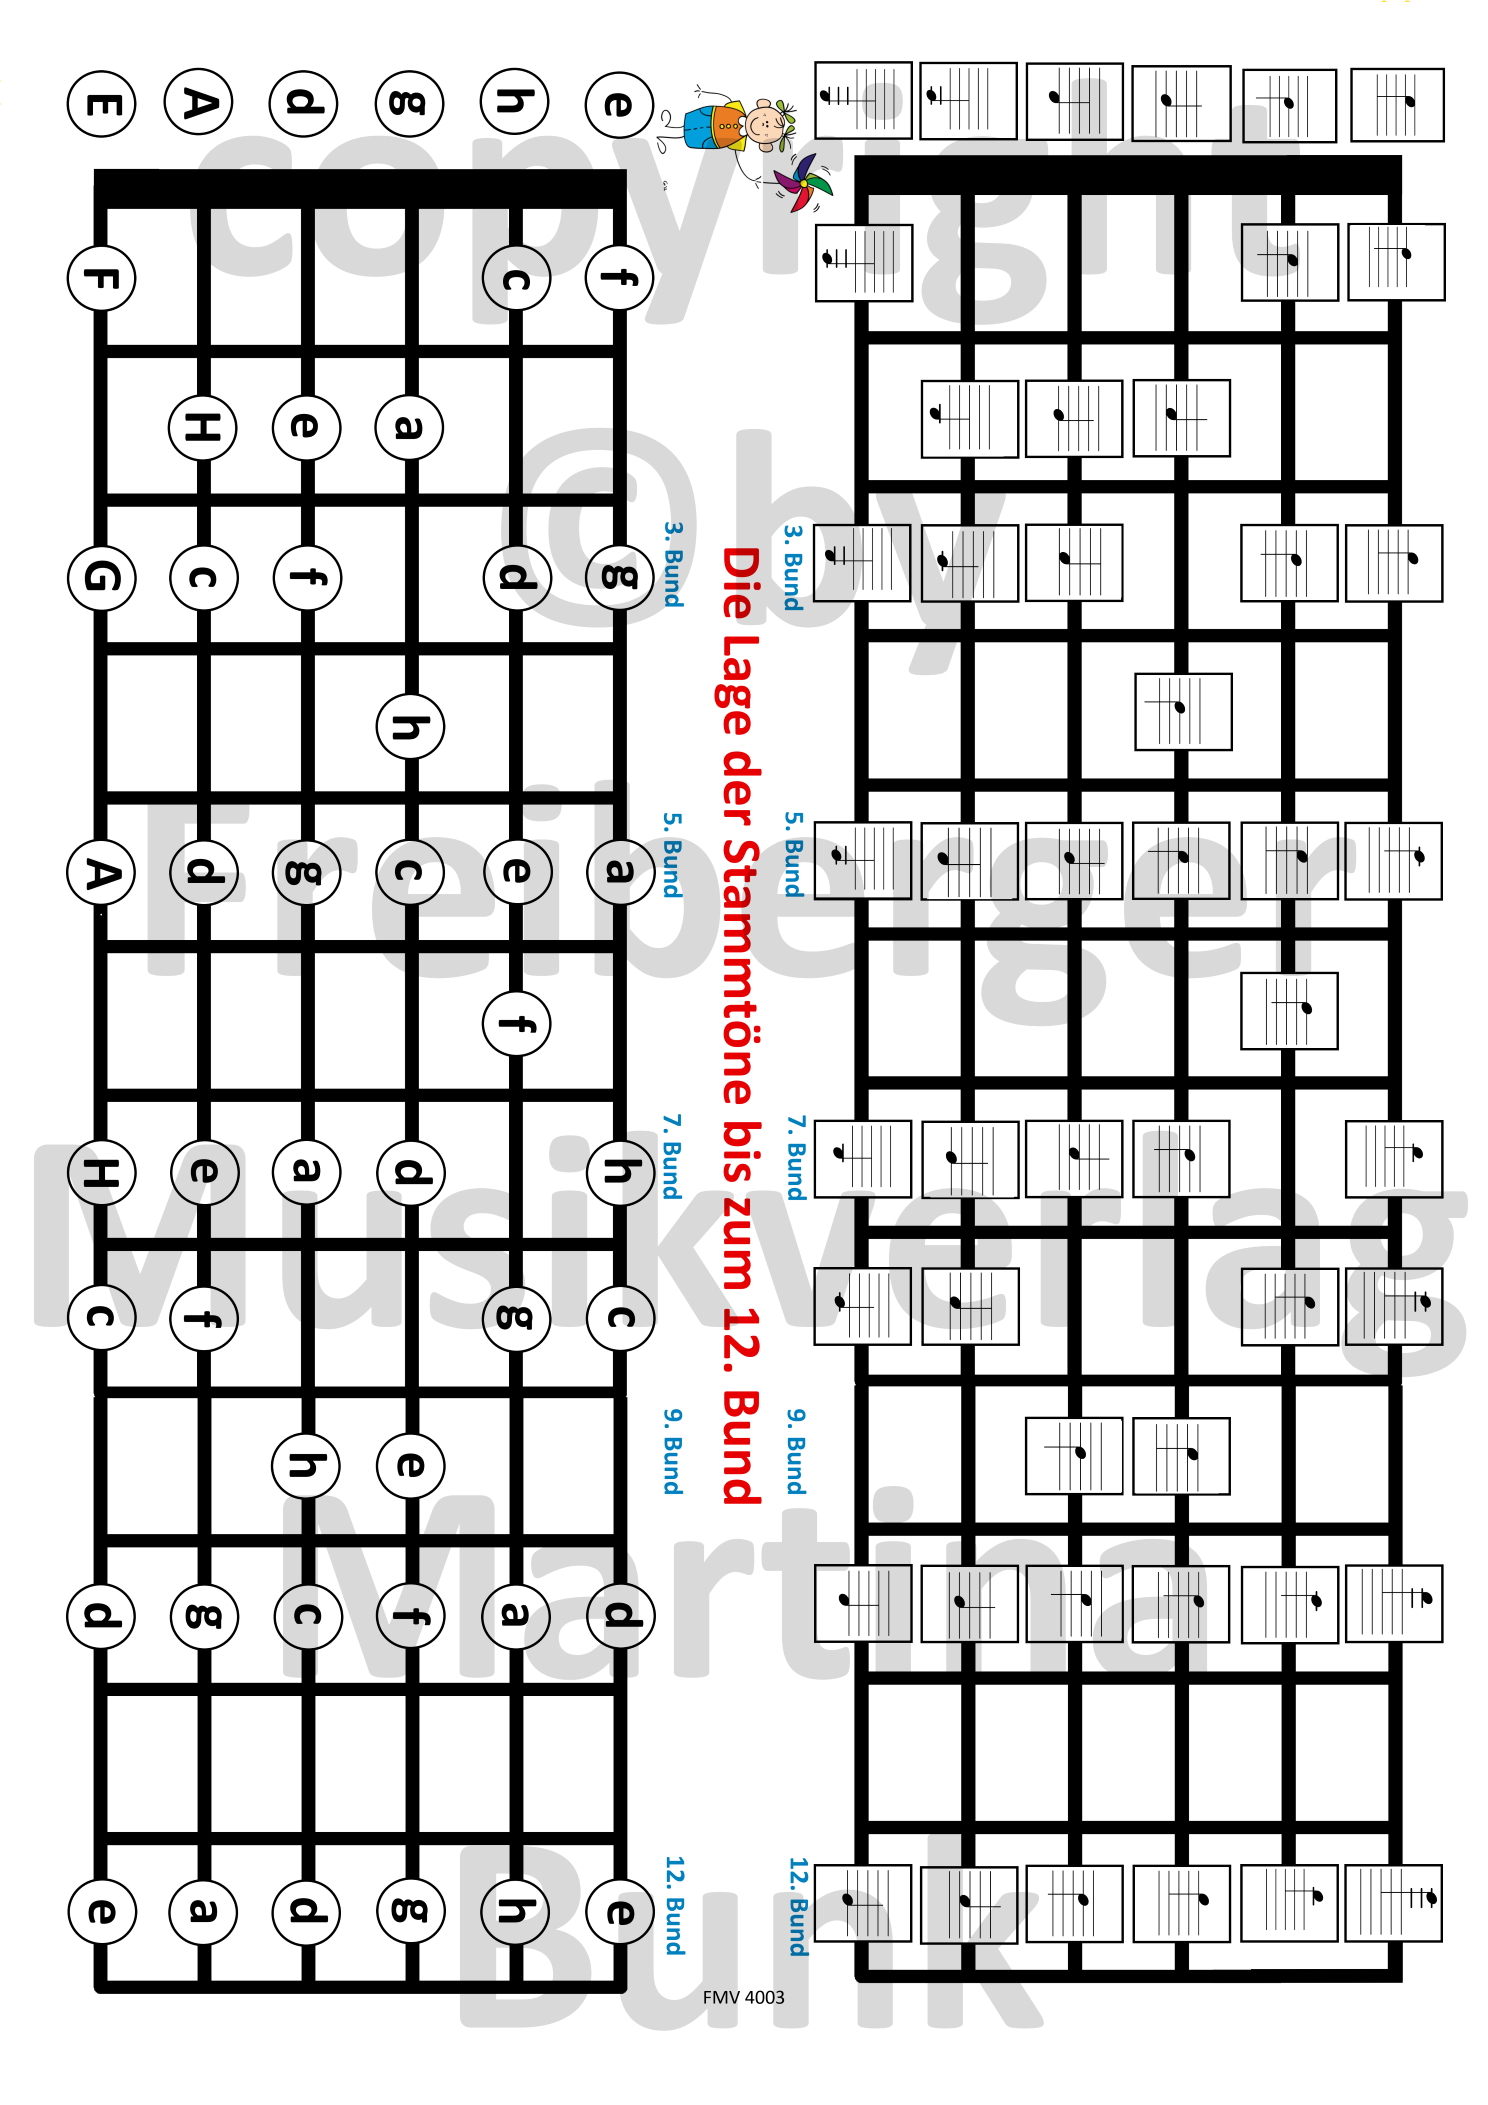 Die Lage der Stammtöne auf der Gitarre bis zum 12. Bund